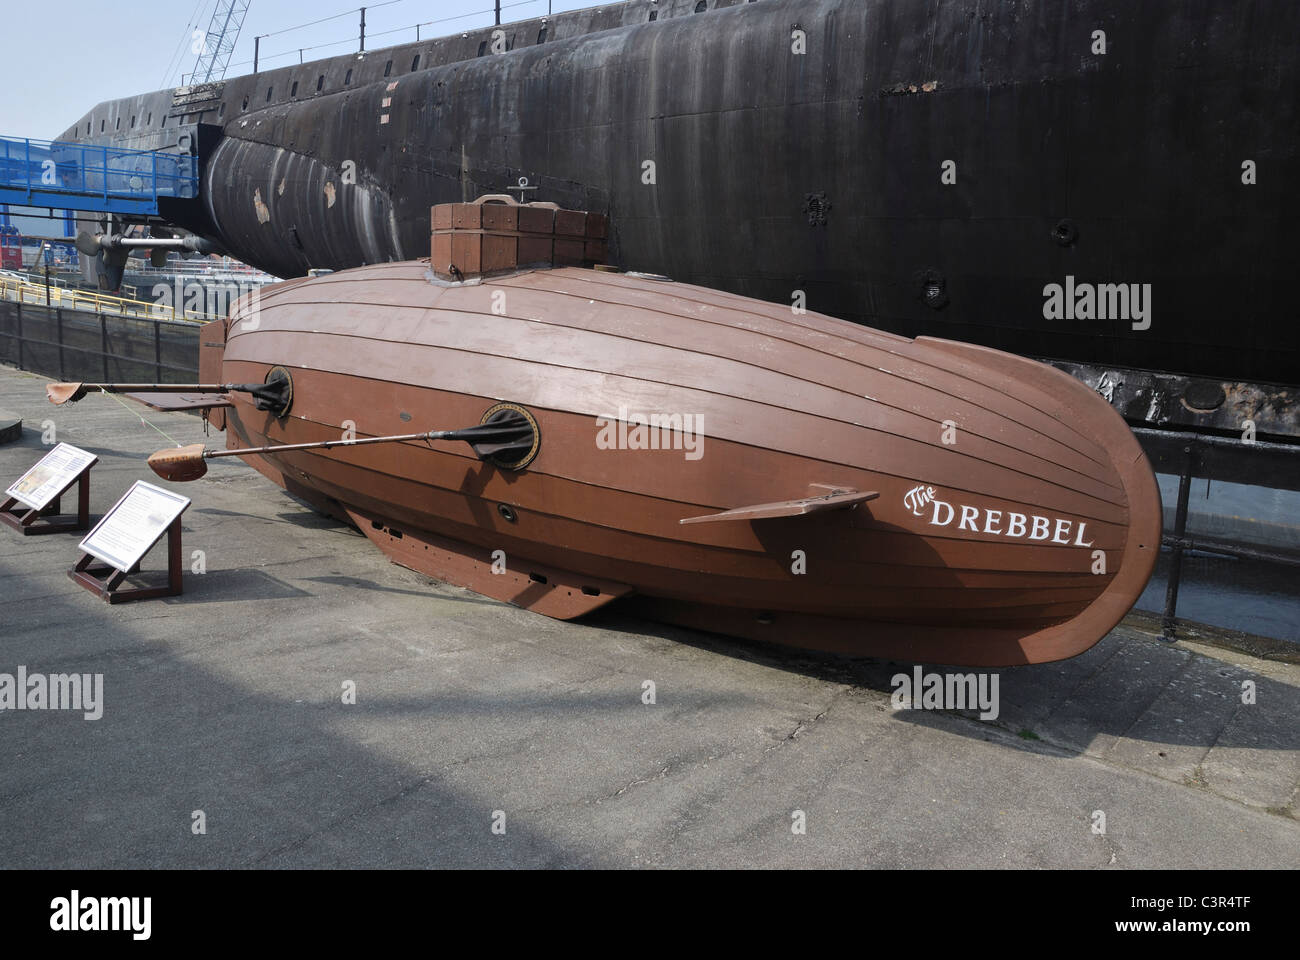 Una réplica de la Van Drebbel submarino en el museo submarino de ...